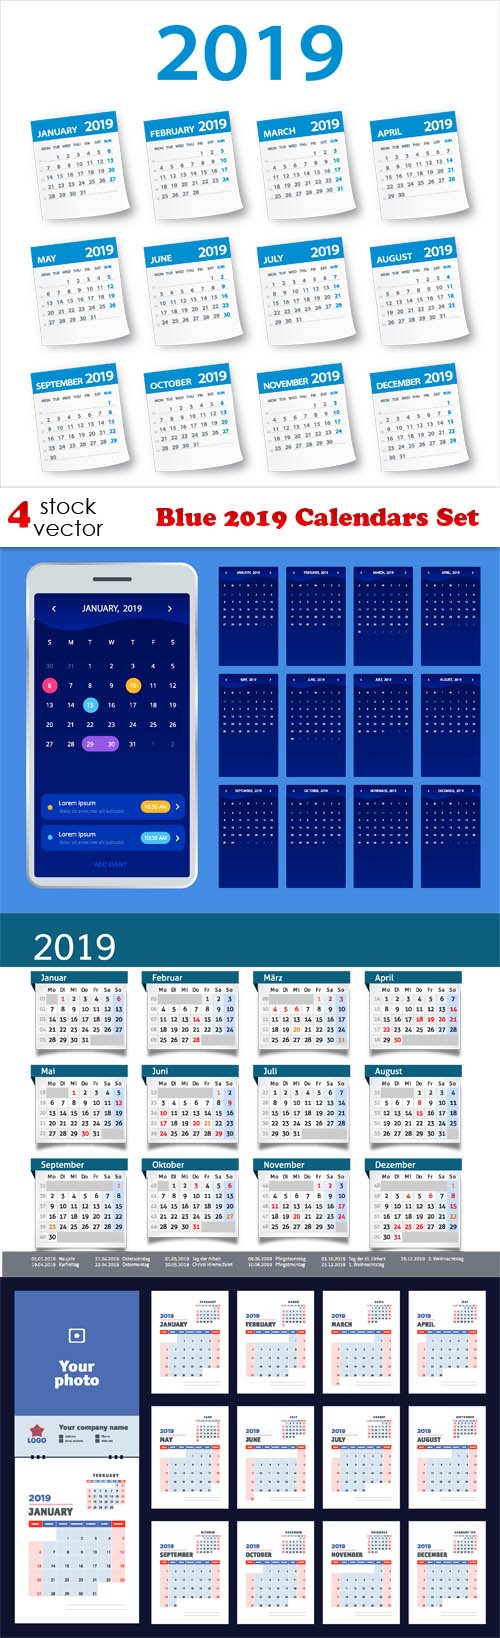 Vectors - Blue 2019 Calendars Set